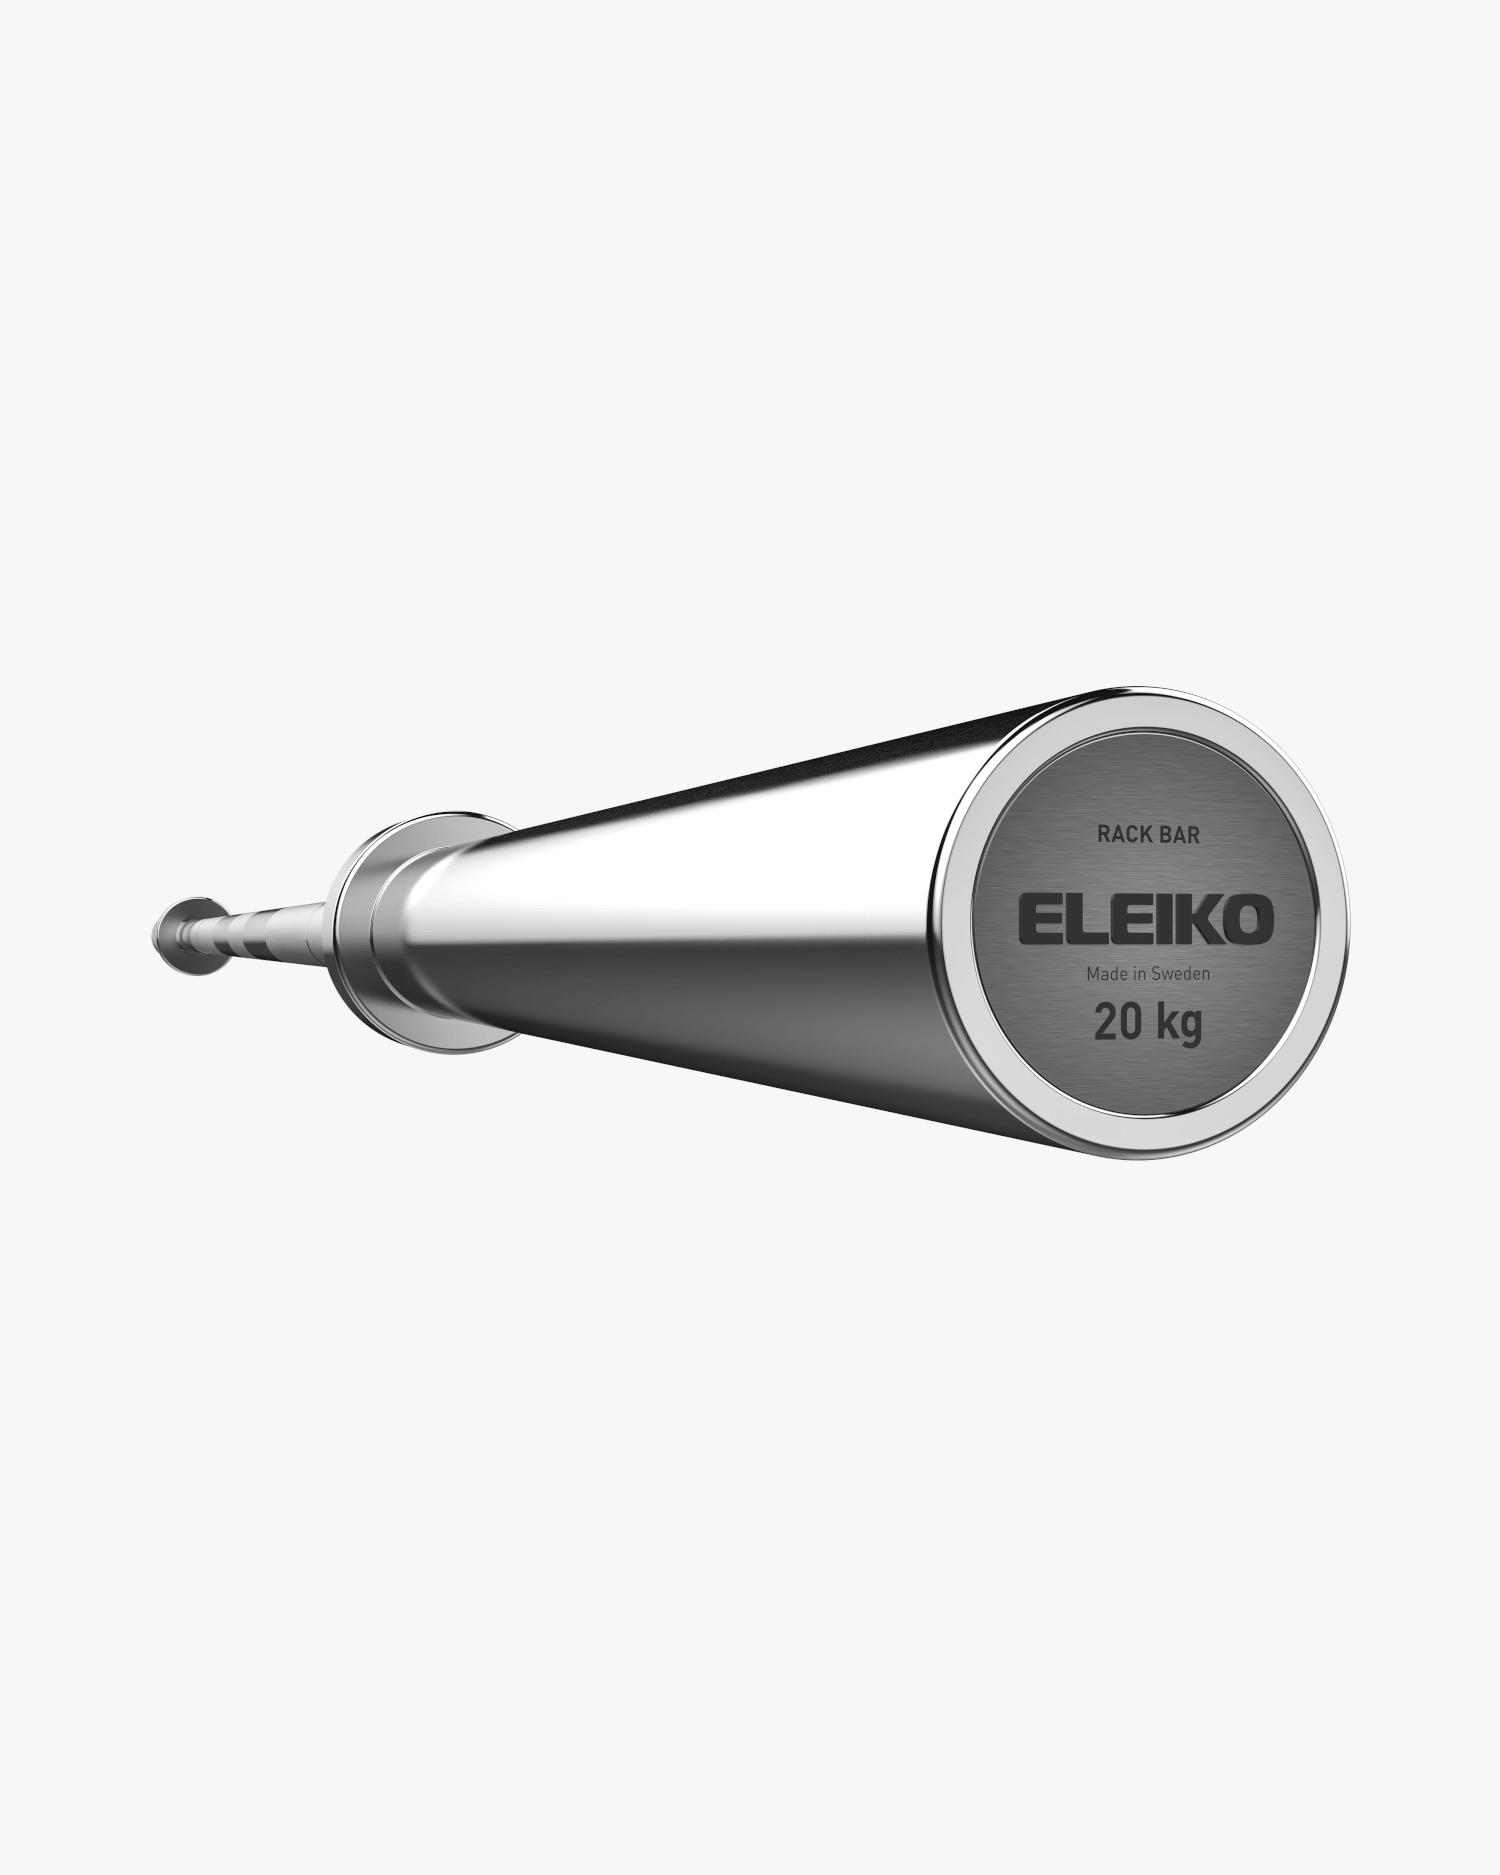 shop.eleiko.com